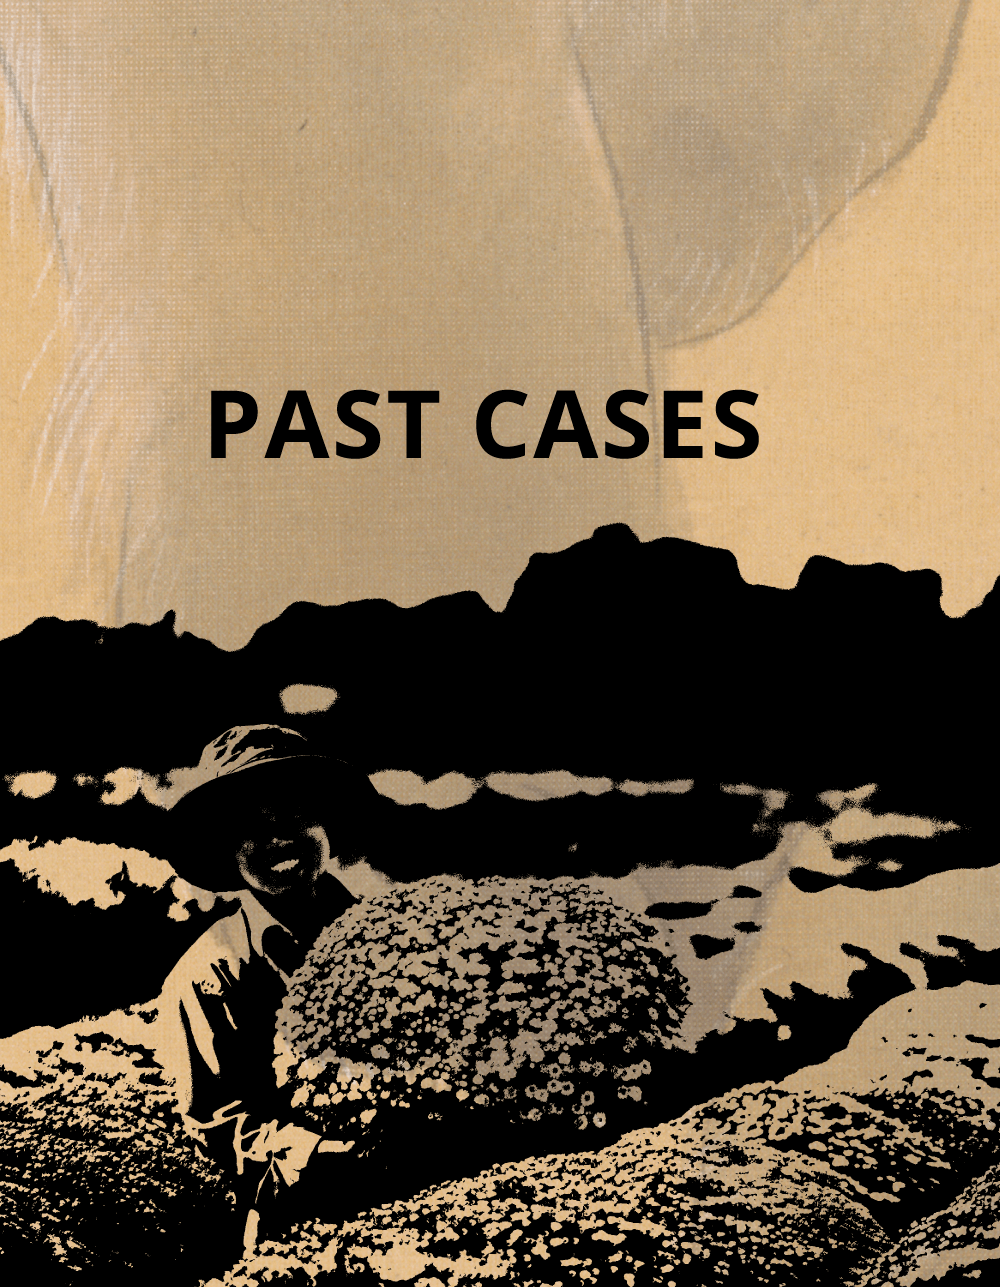 PAST CASES